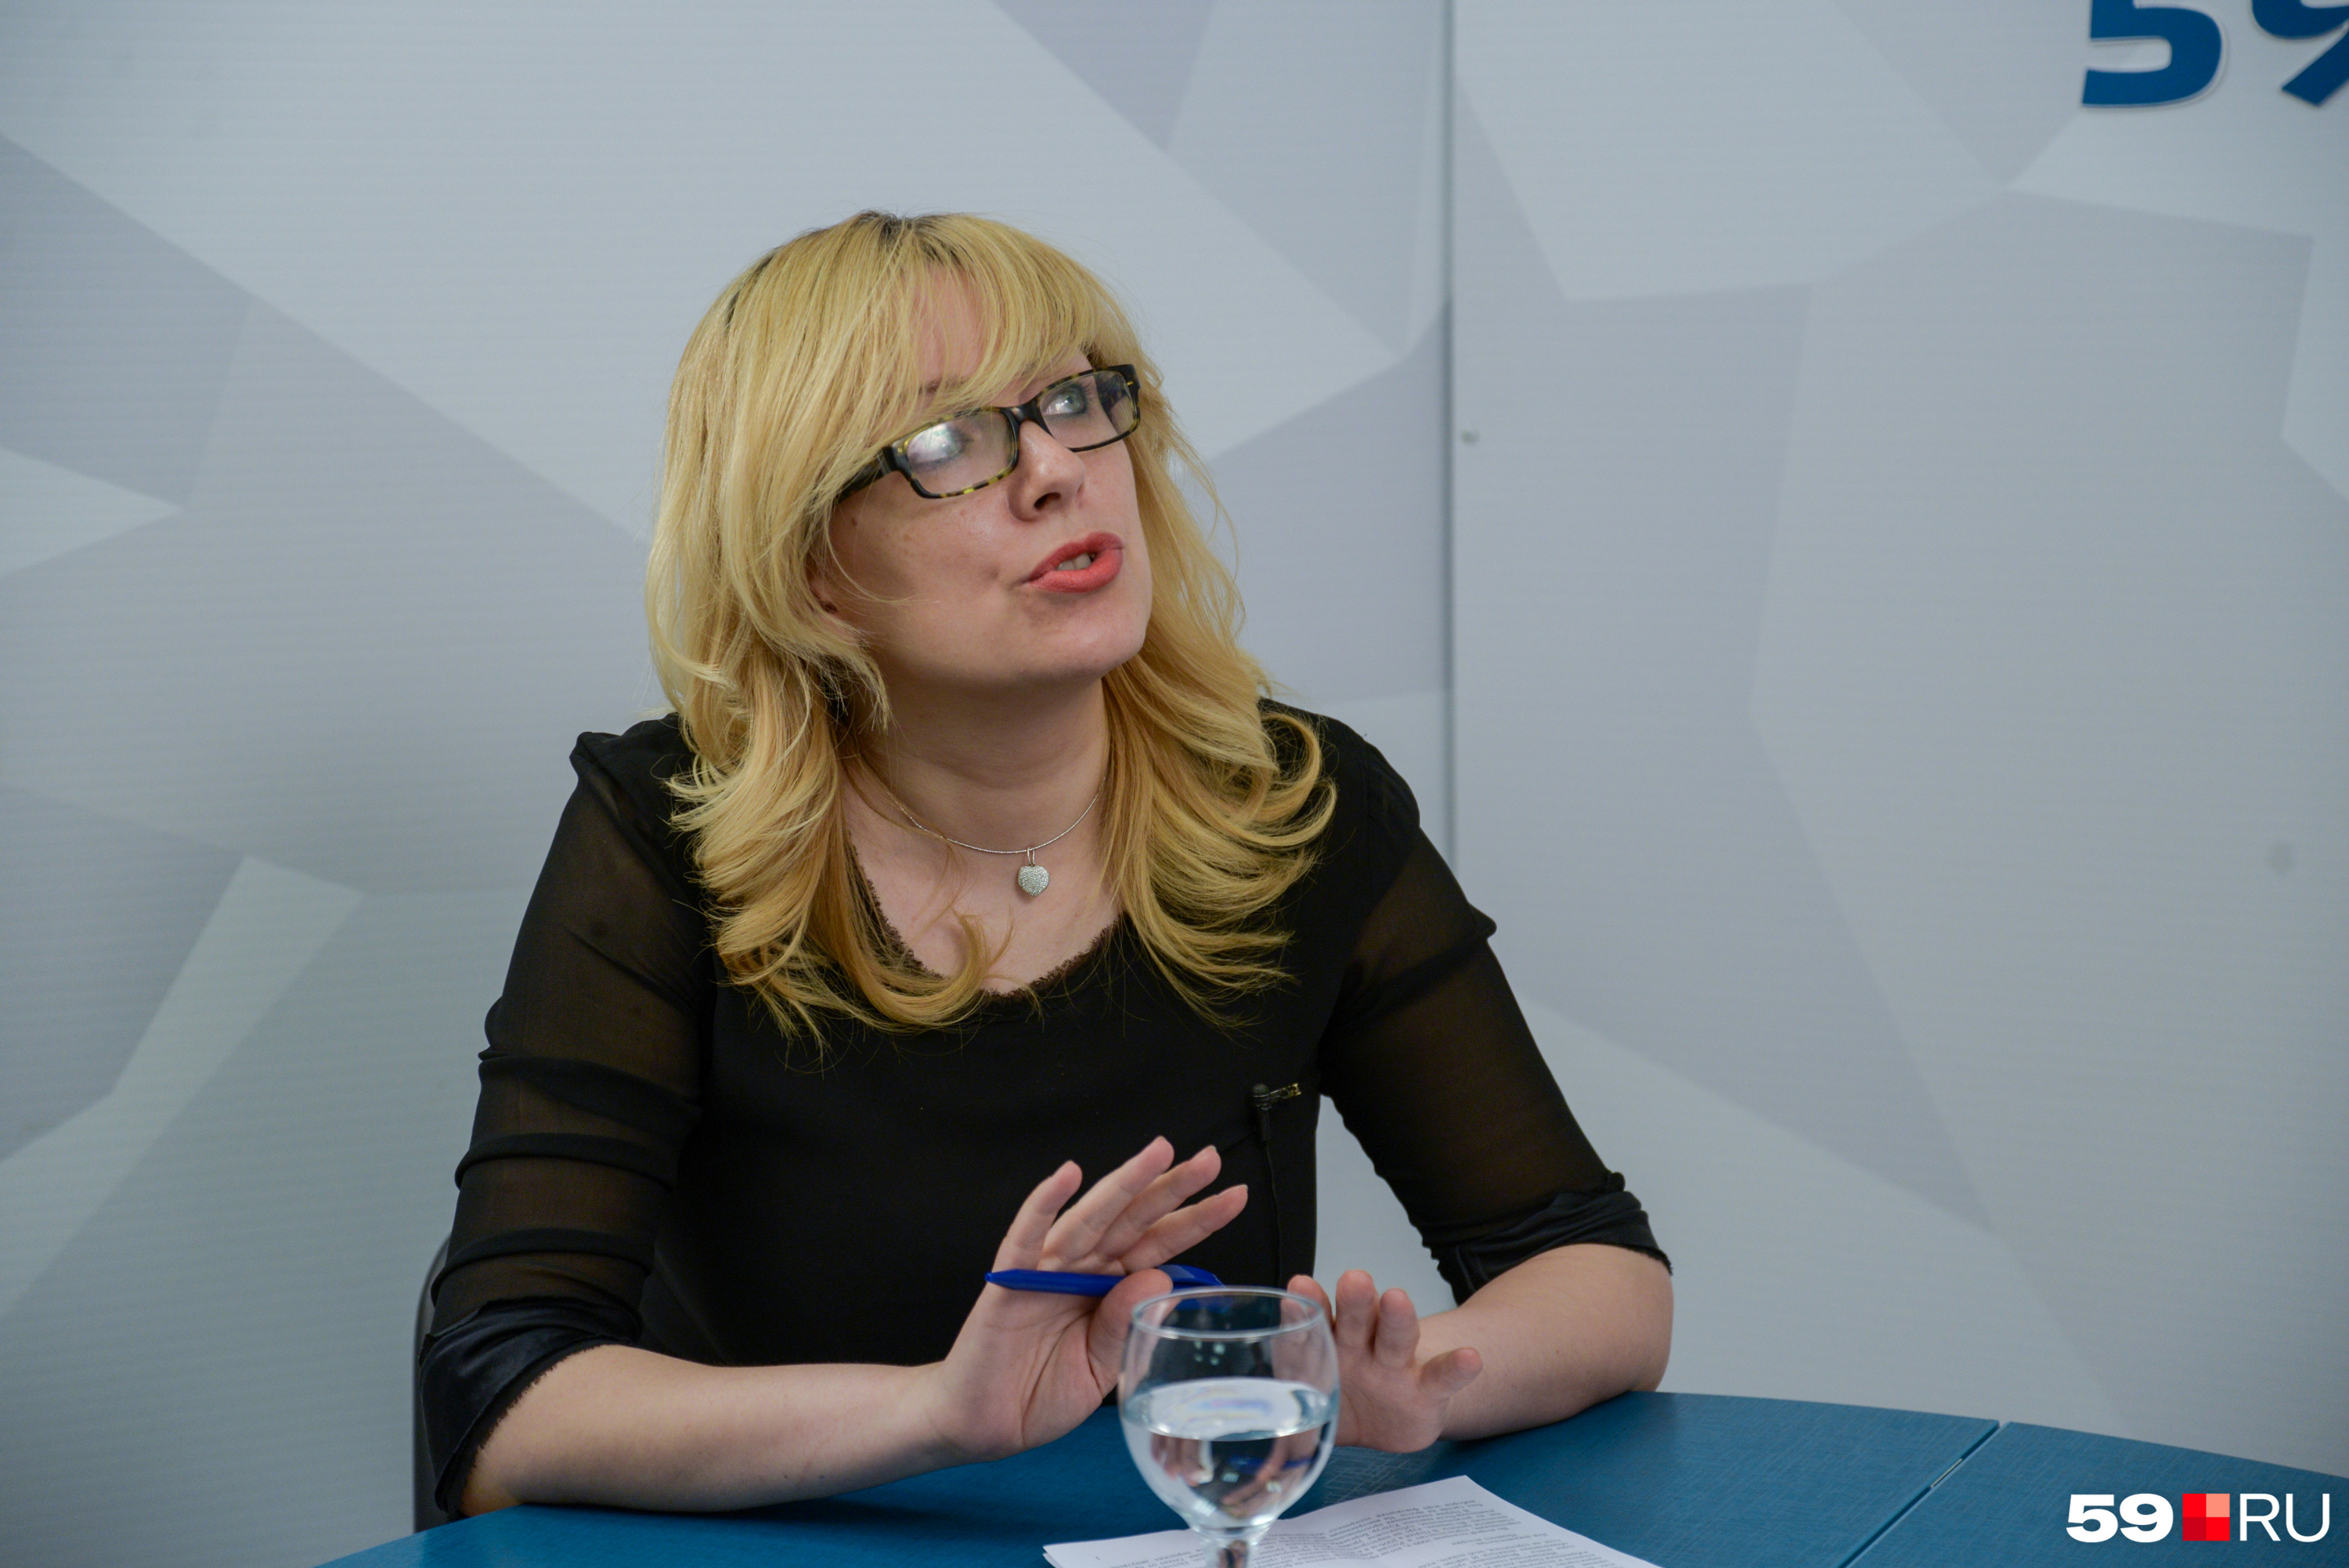 Людмила Ознобишина полагает, что в окружении Решетникова преемника на пост губернатора нет